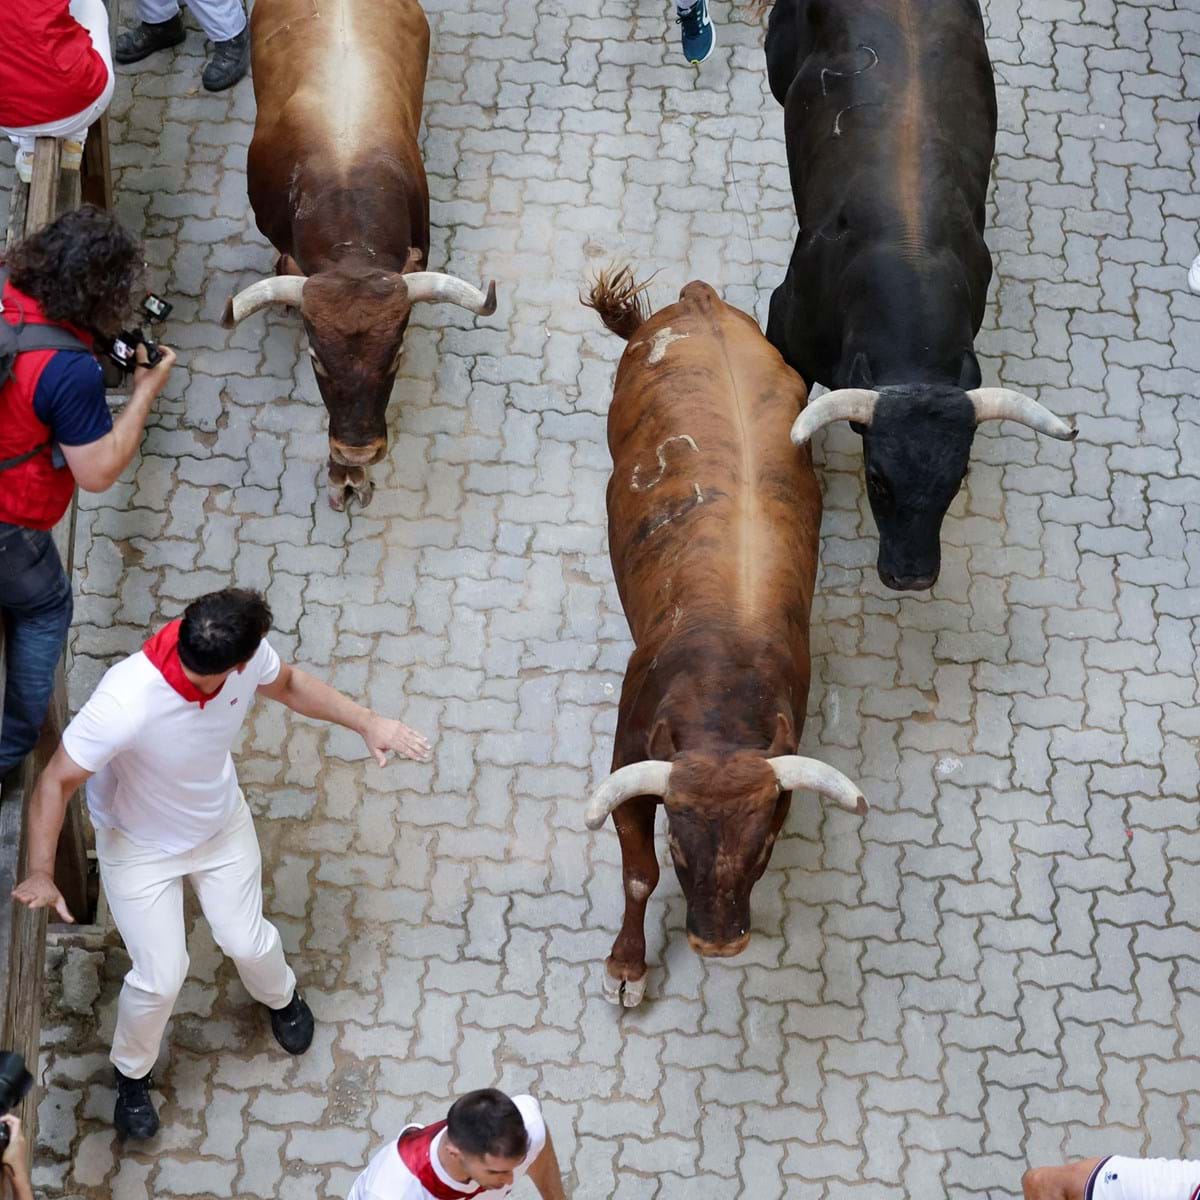 Corrida de touros na Espanha deixa sete feridos; veja vídeo